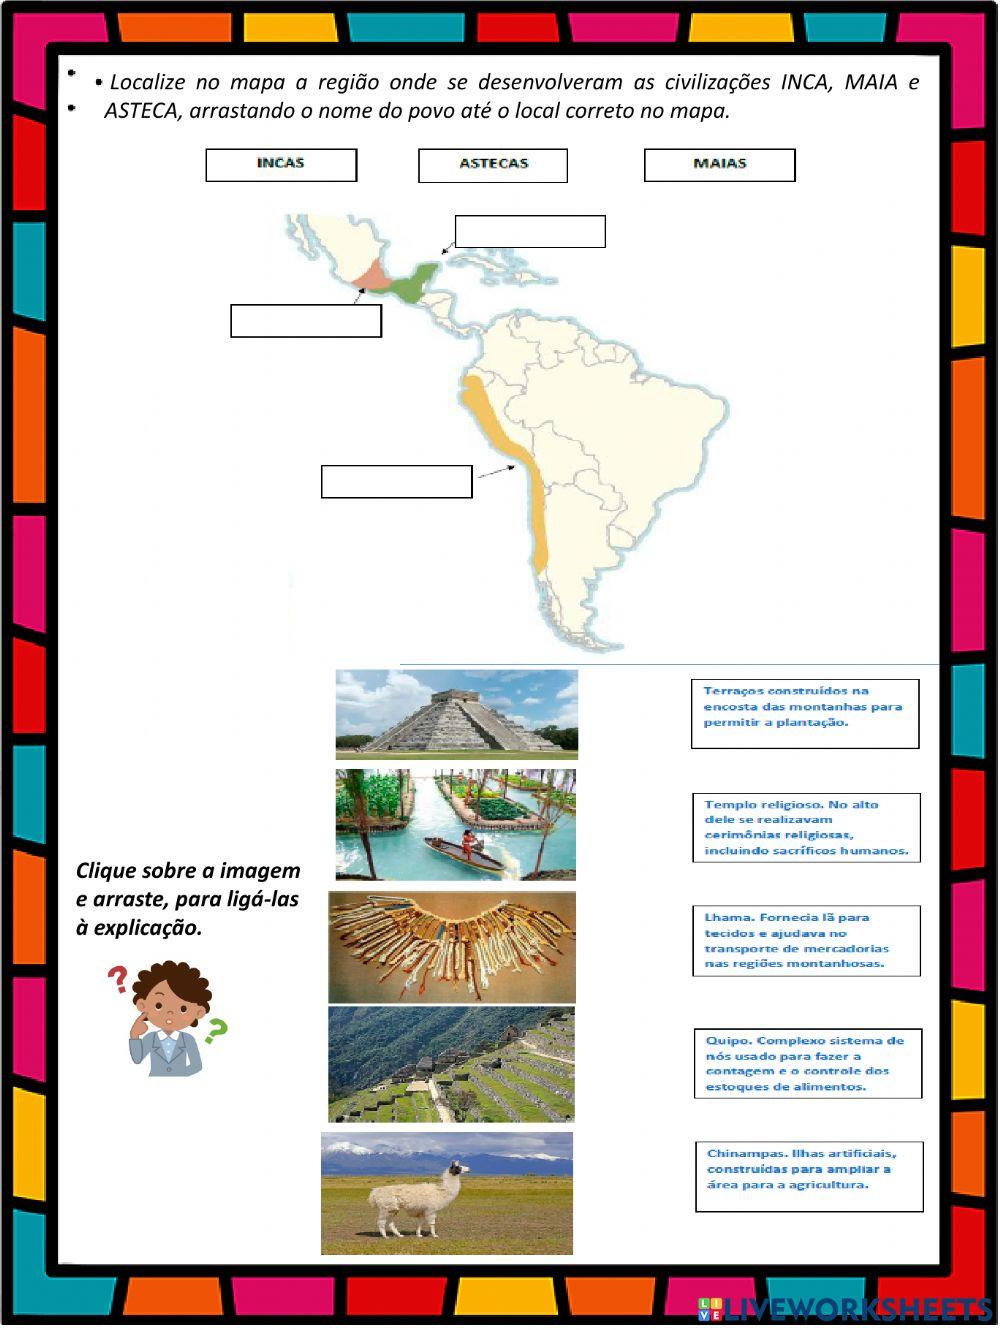 Astecas, maias e incas - povos pré-colombianos